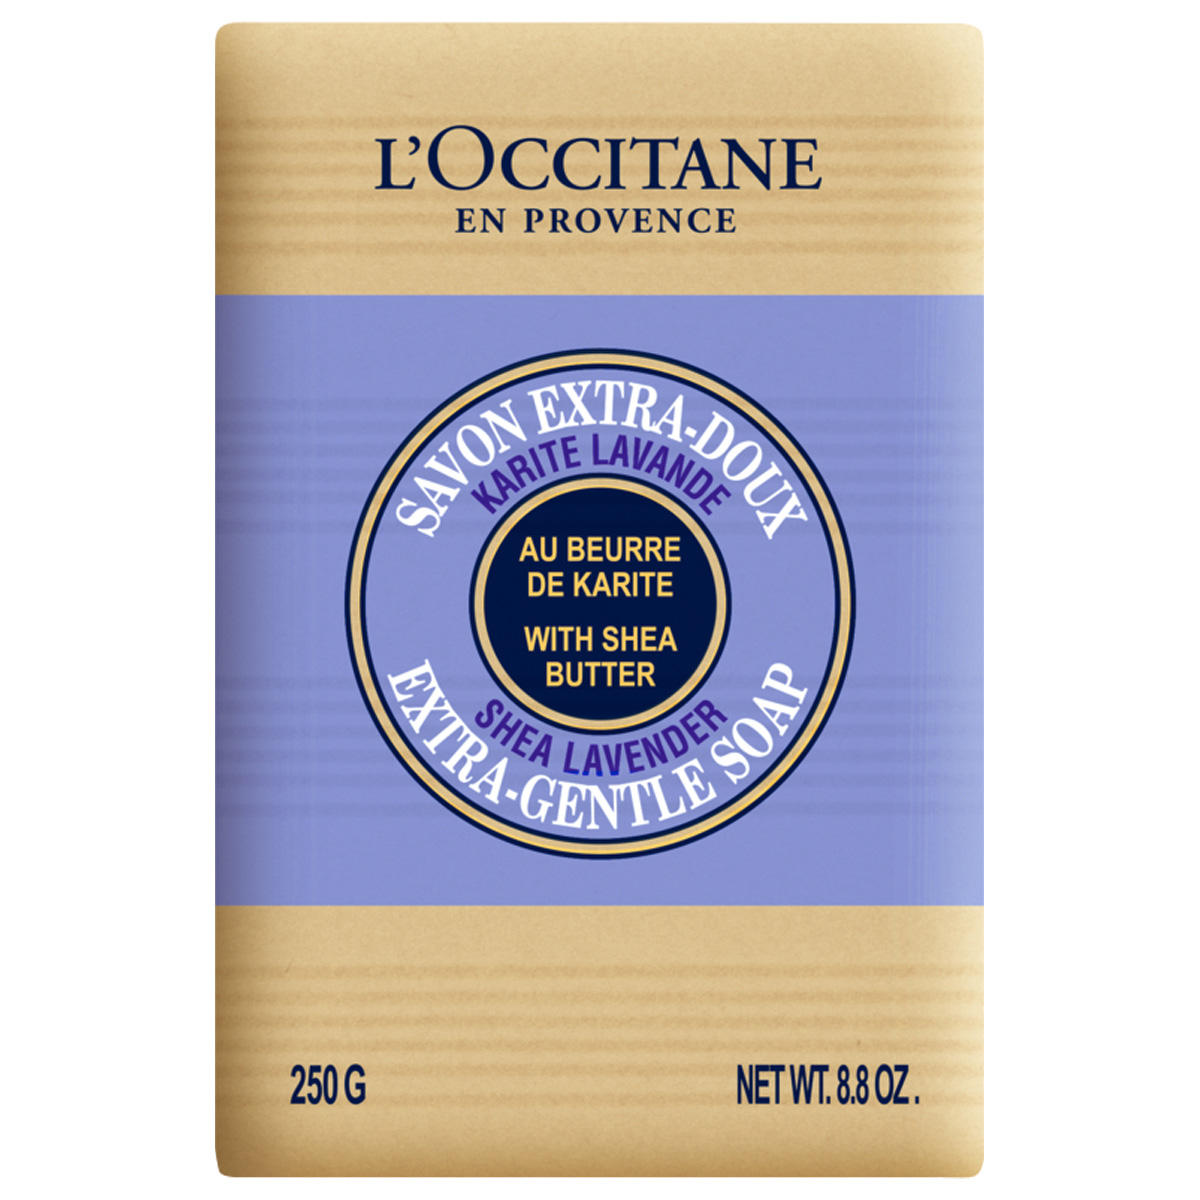 L'Occitane Soap lavender 250 g - 1